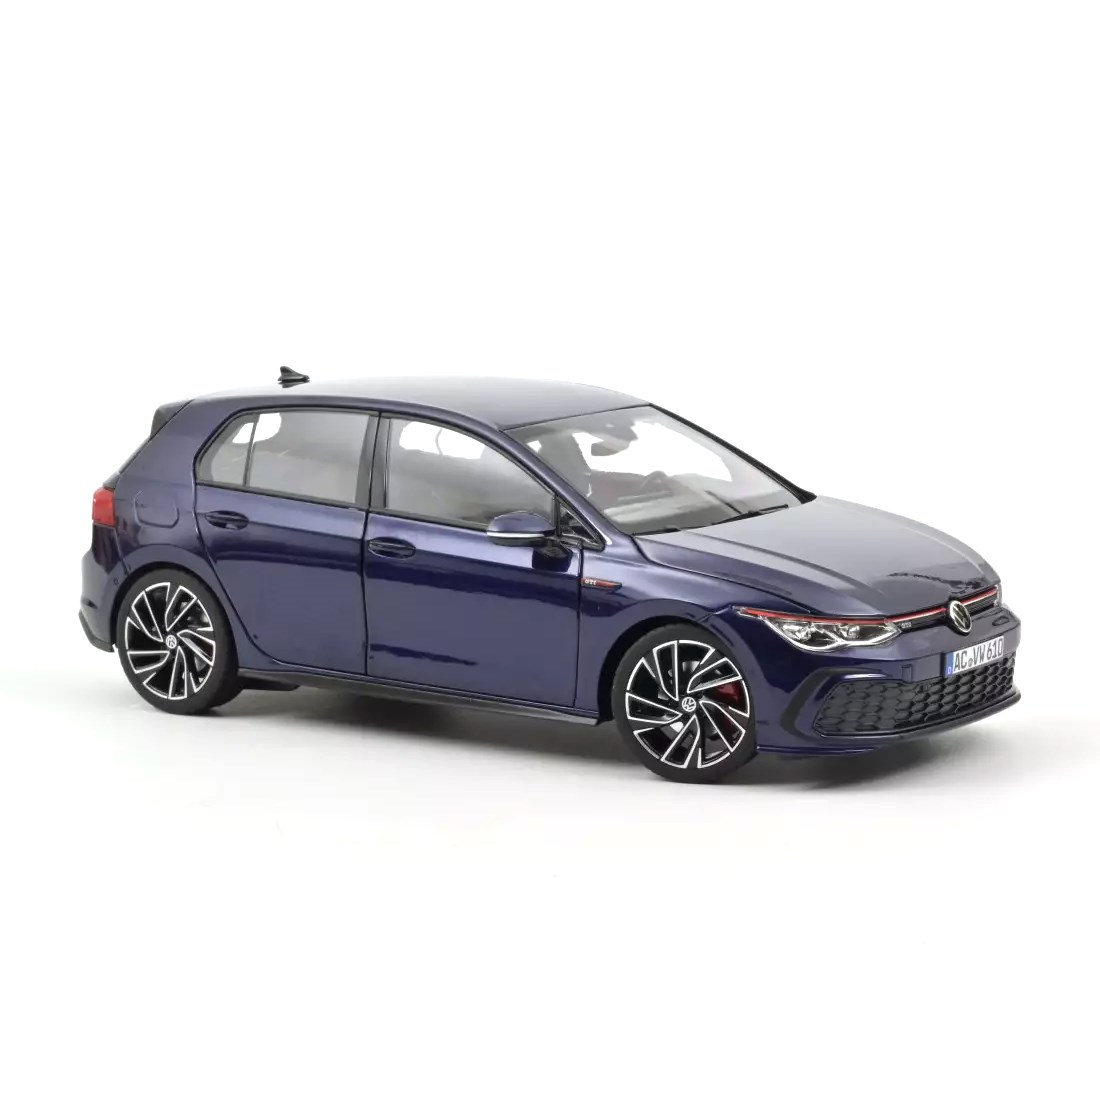 Norev Volkswagen Golf GTI 2020 - Blue Metallic 1:18